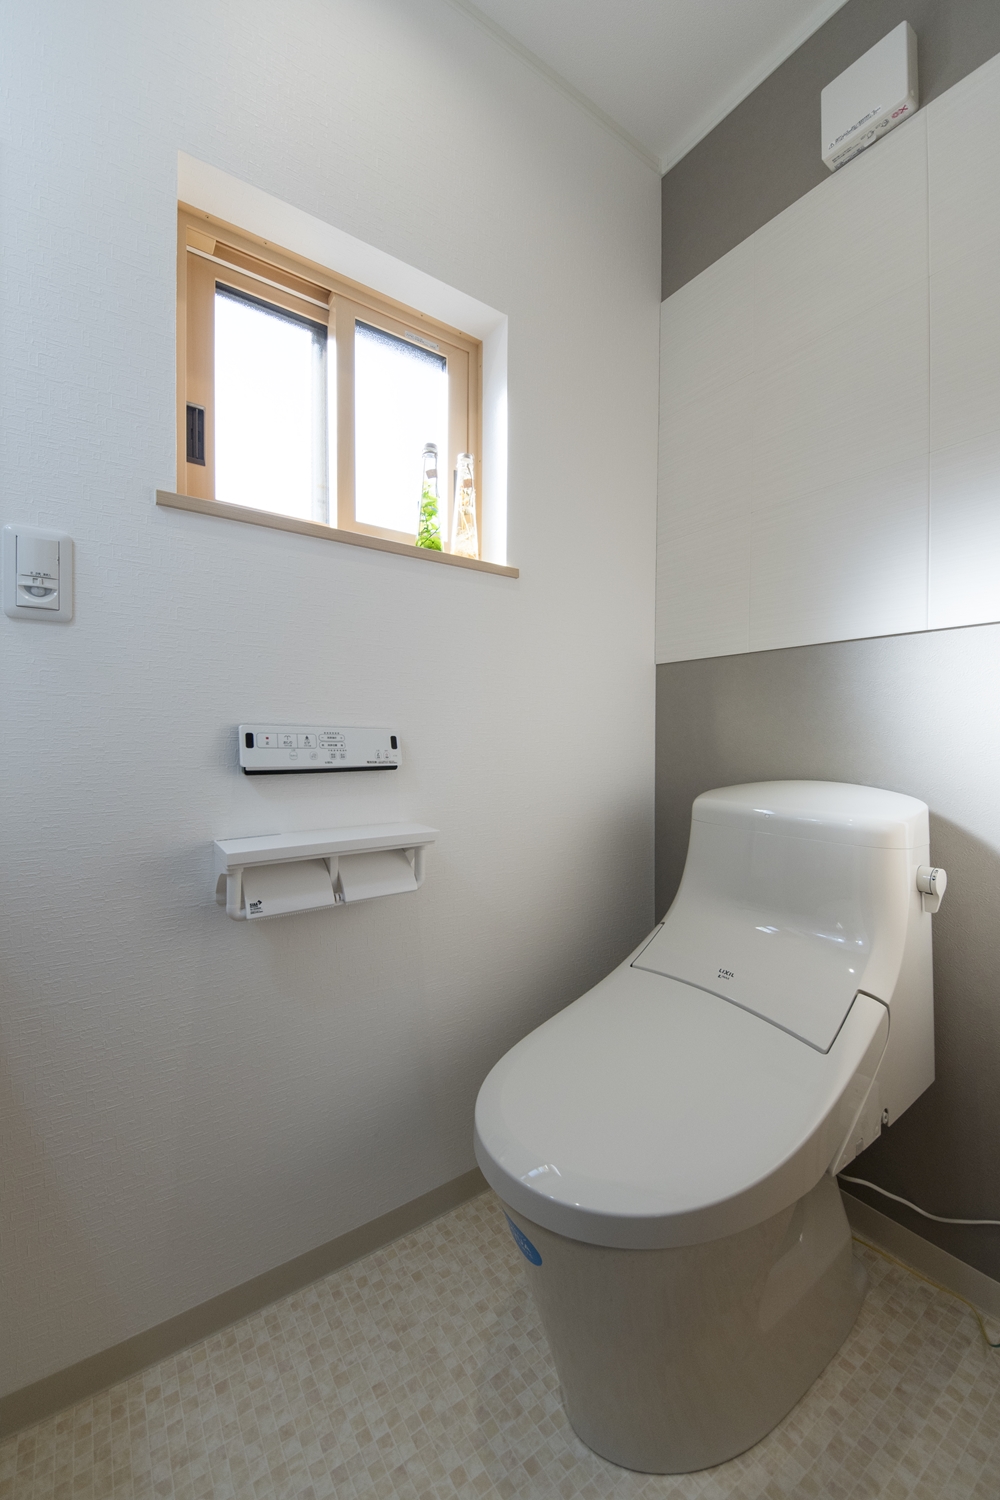 2Fトイレ／コンパクトなタンクレストイレを採用し、消臭・調湿効果のあるエコカラットタイルを施した、スッキリとした快適な空間。